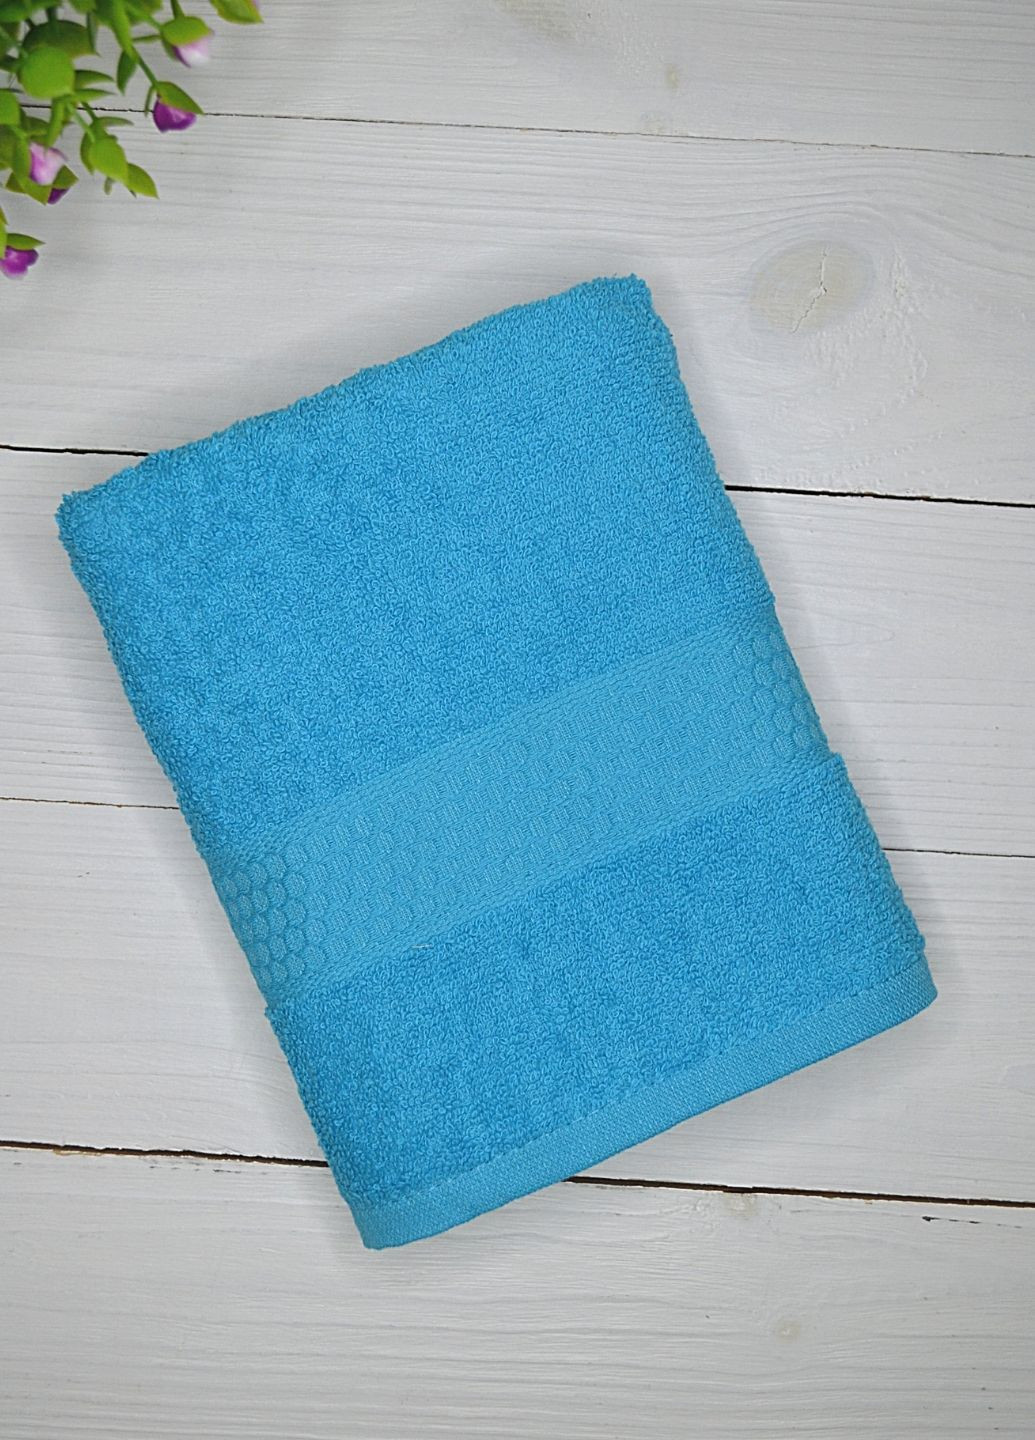 Sertay полотенце для лица, 45х85 см однотонный голубой производство - Турция